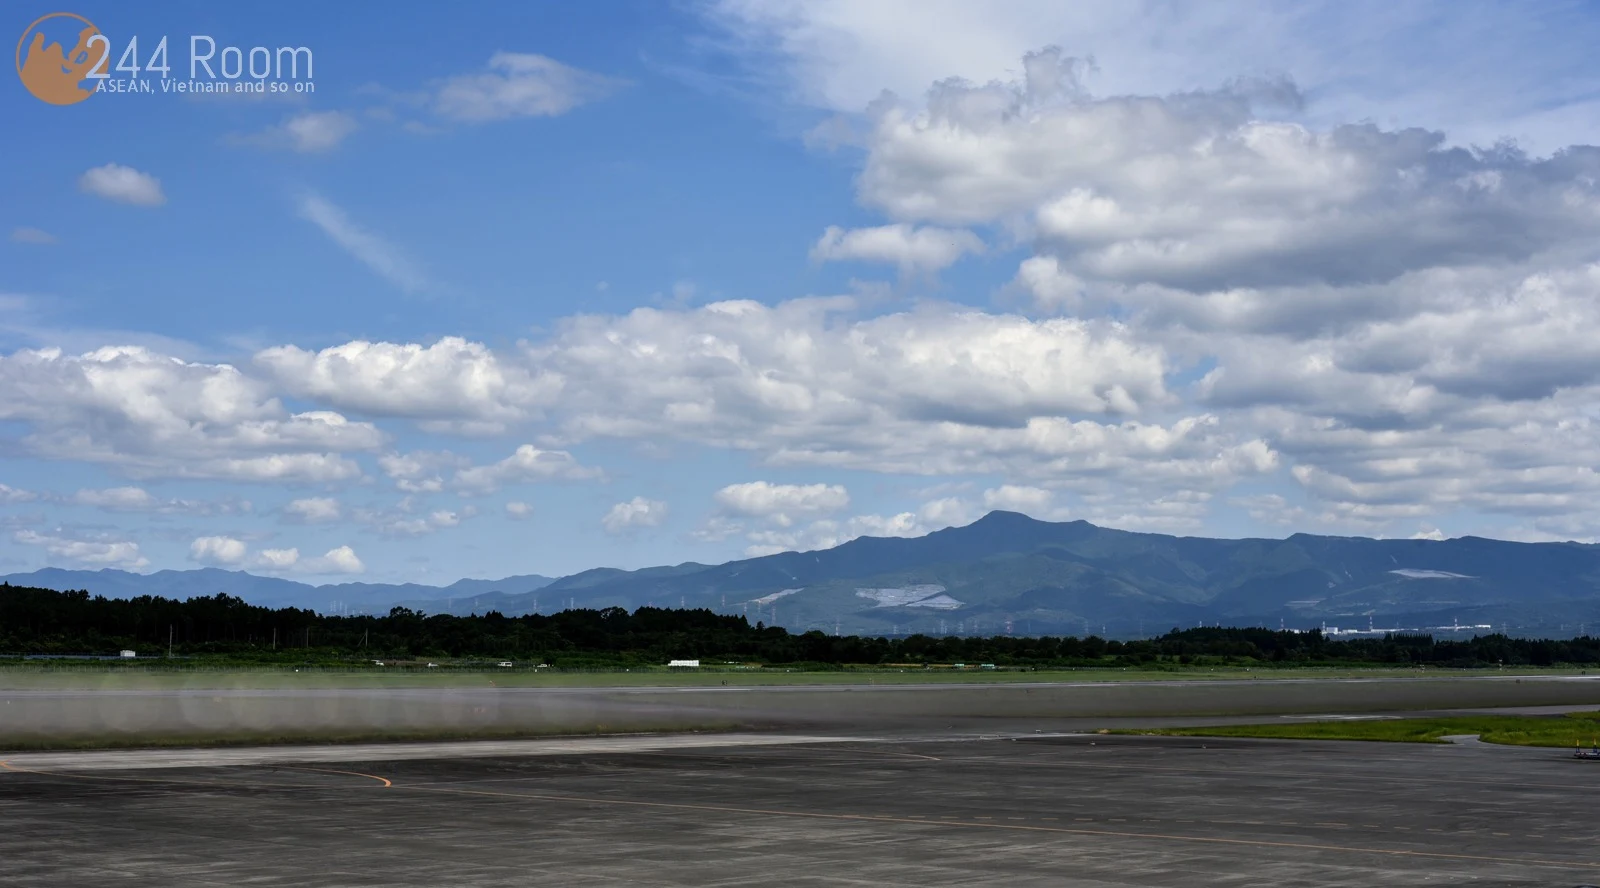 Aso kumamoto airport 阿蘇くまもと空港2